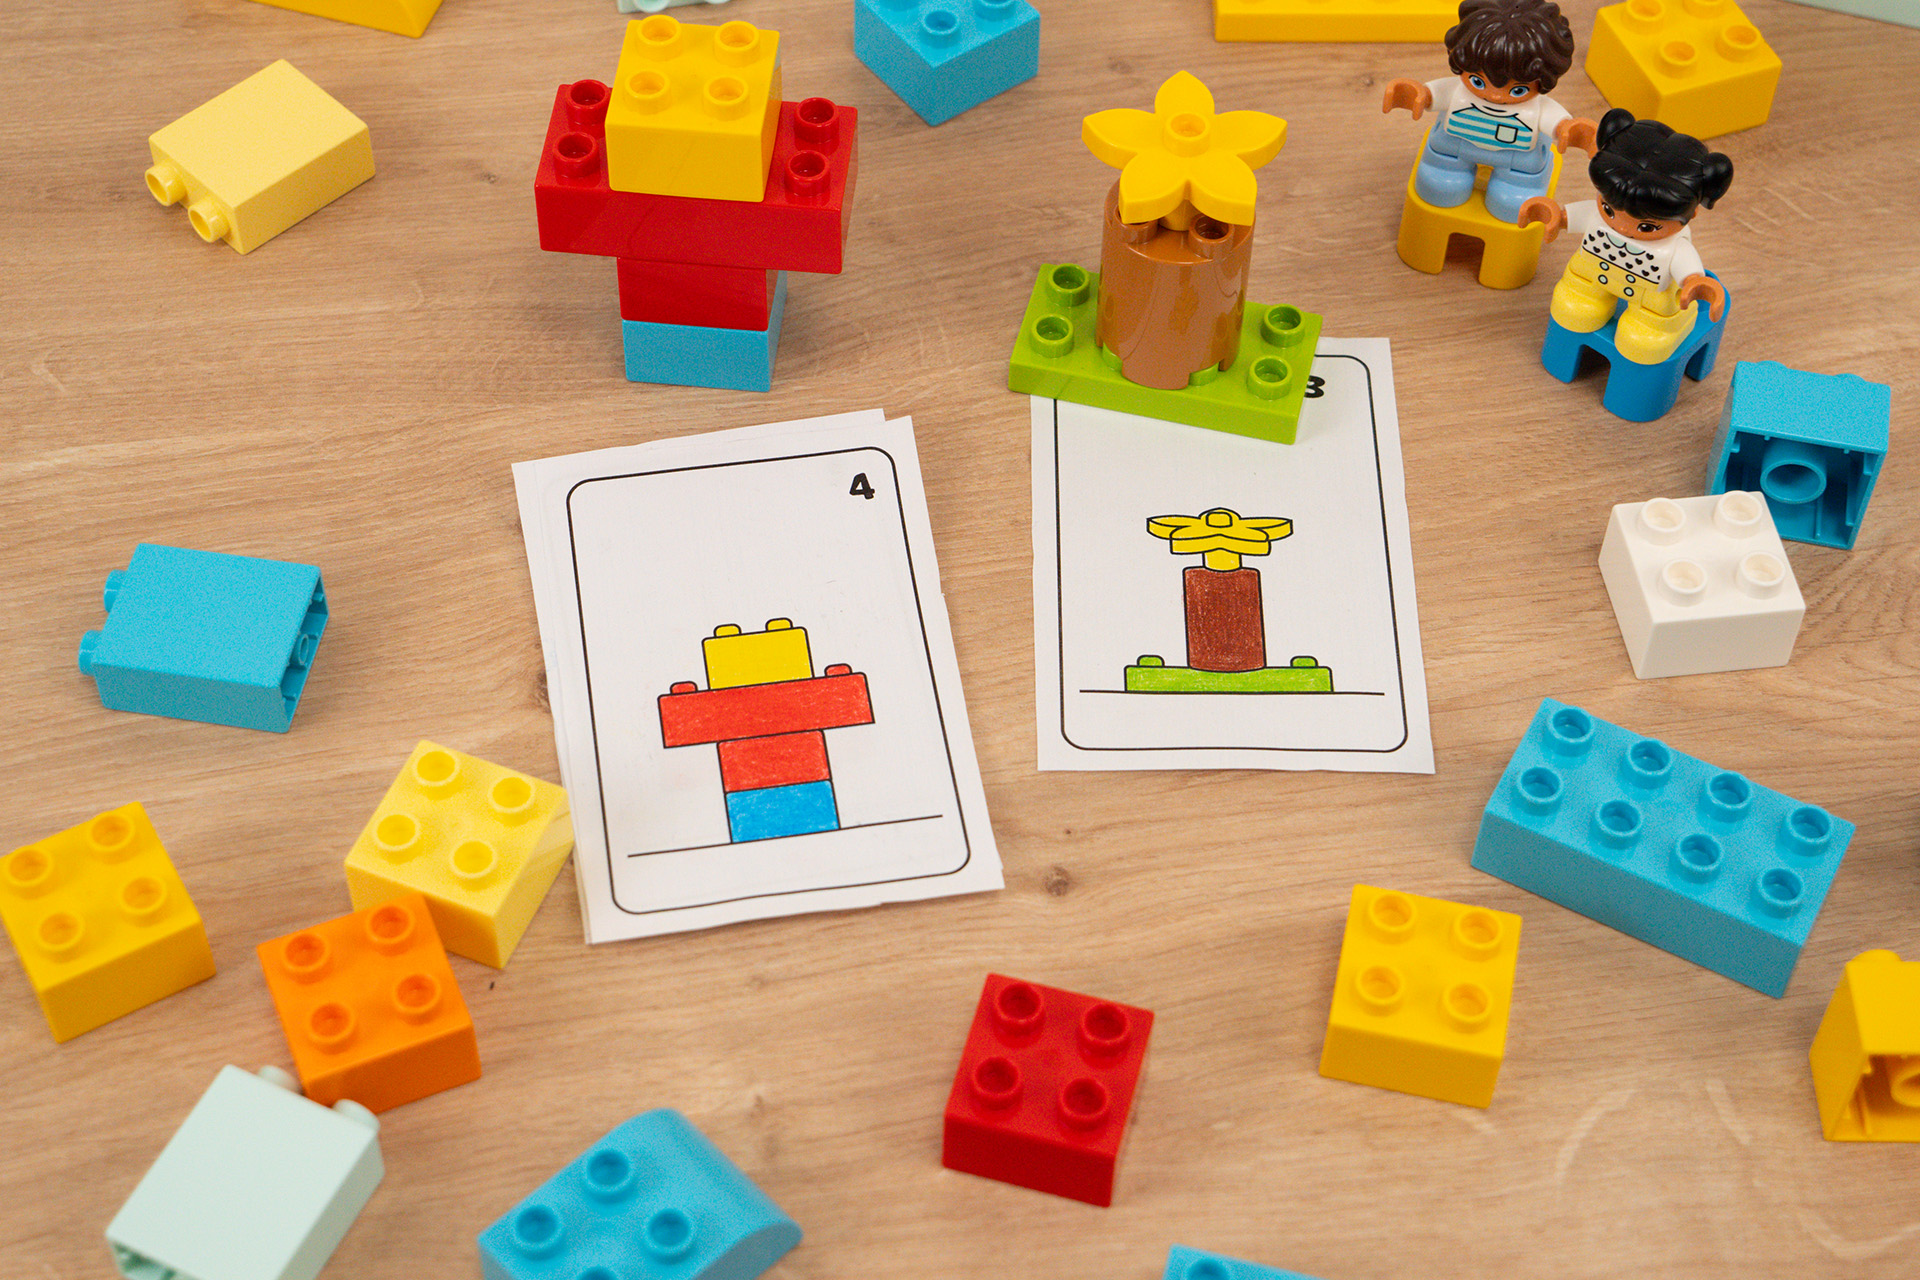 Lego bauen nach Vorlage - Ausmalbild - Konturenbild